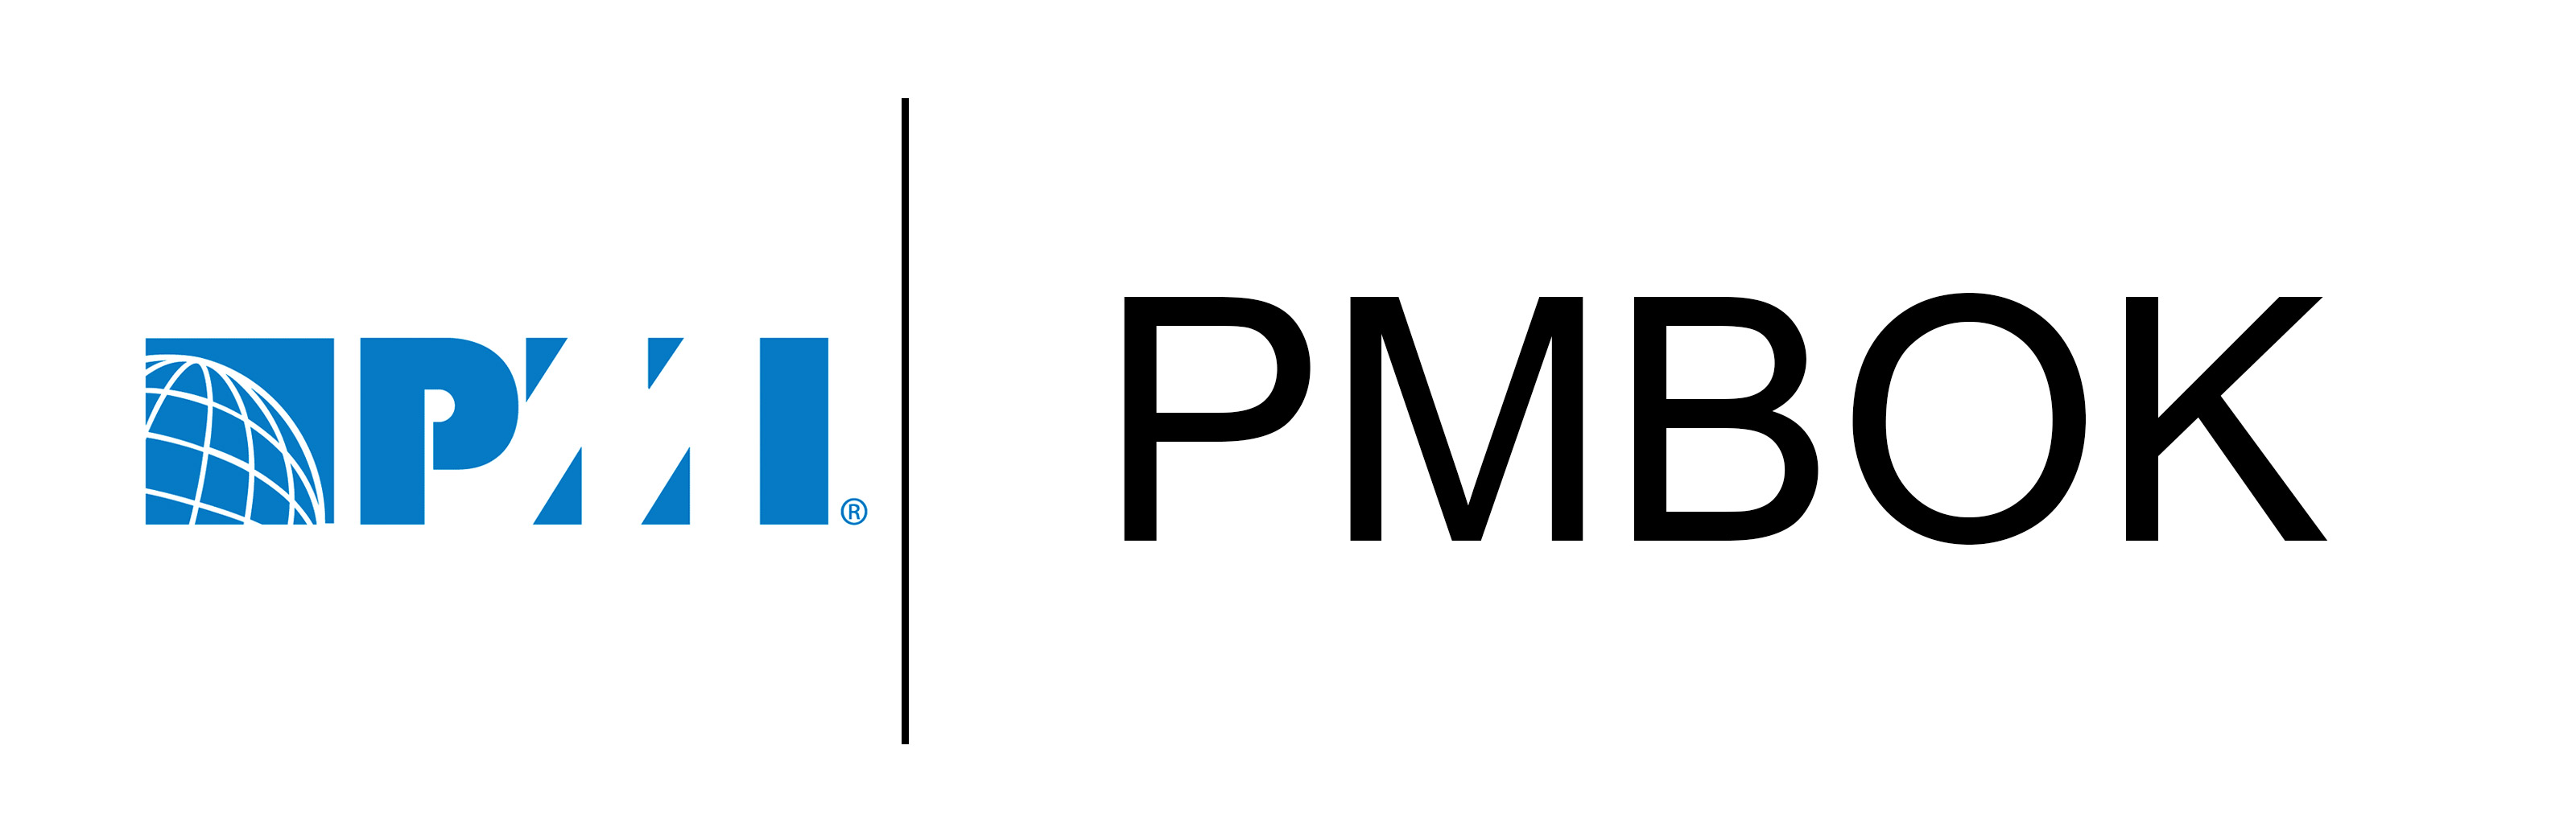 pmbok logo mehregan